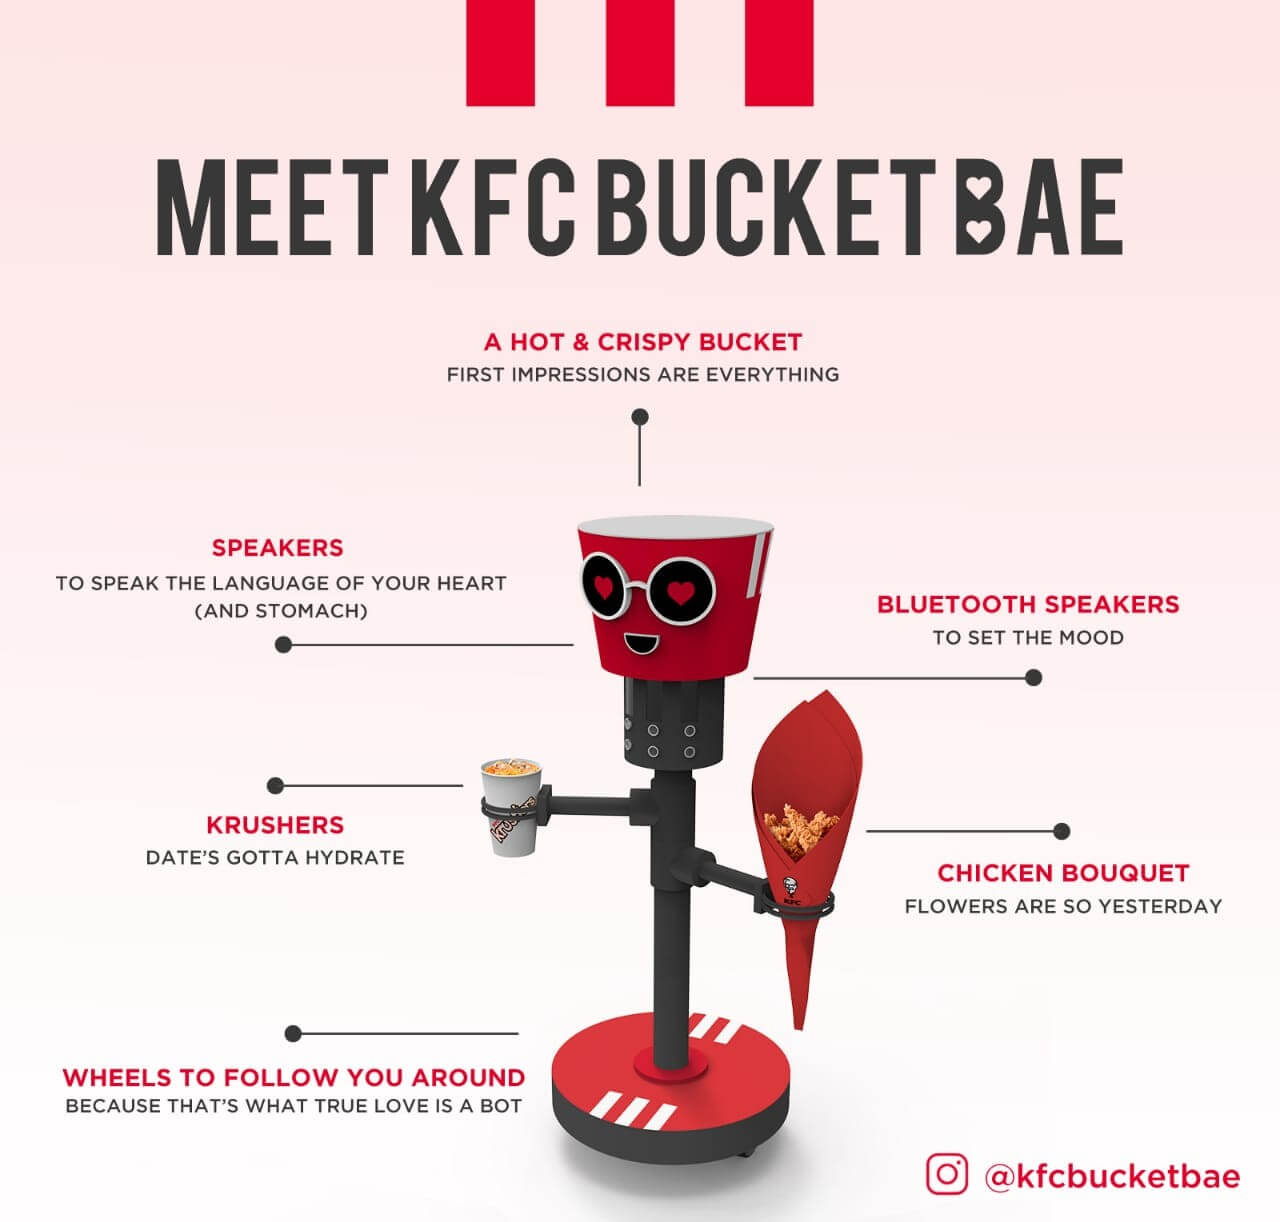 KFC được trang bị thêm bánh xe, do đó nó có thể theo bạn đi khắp nơi. 